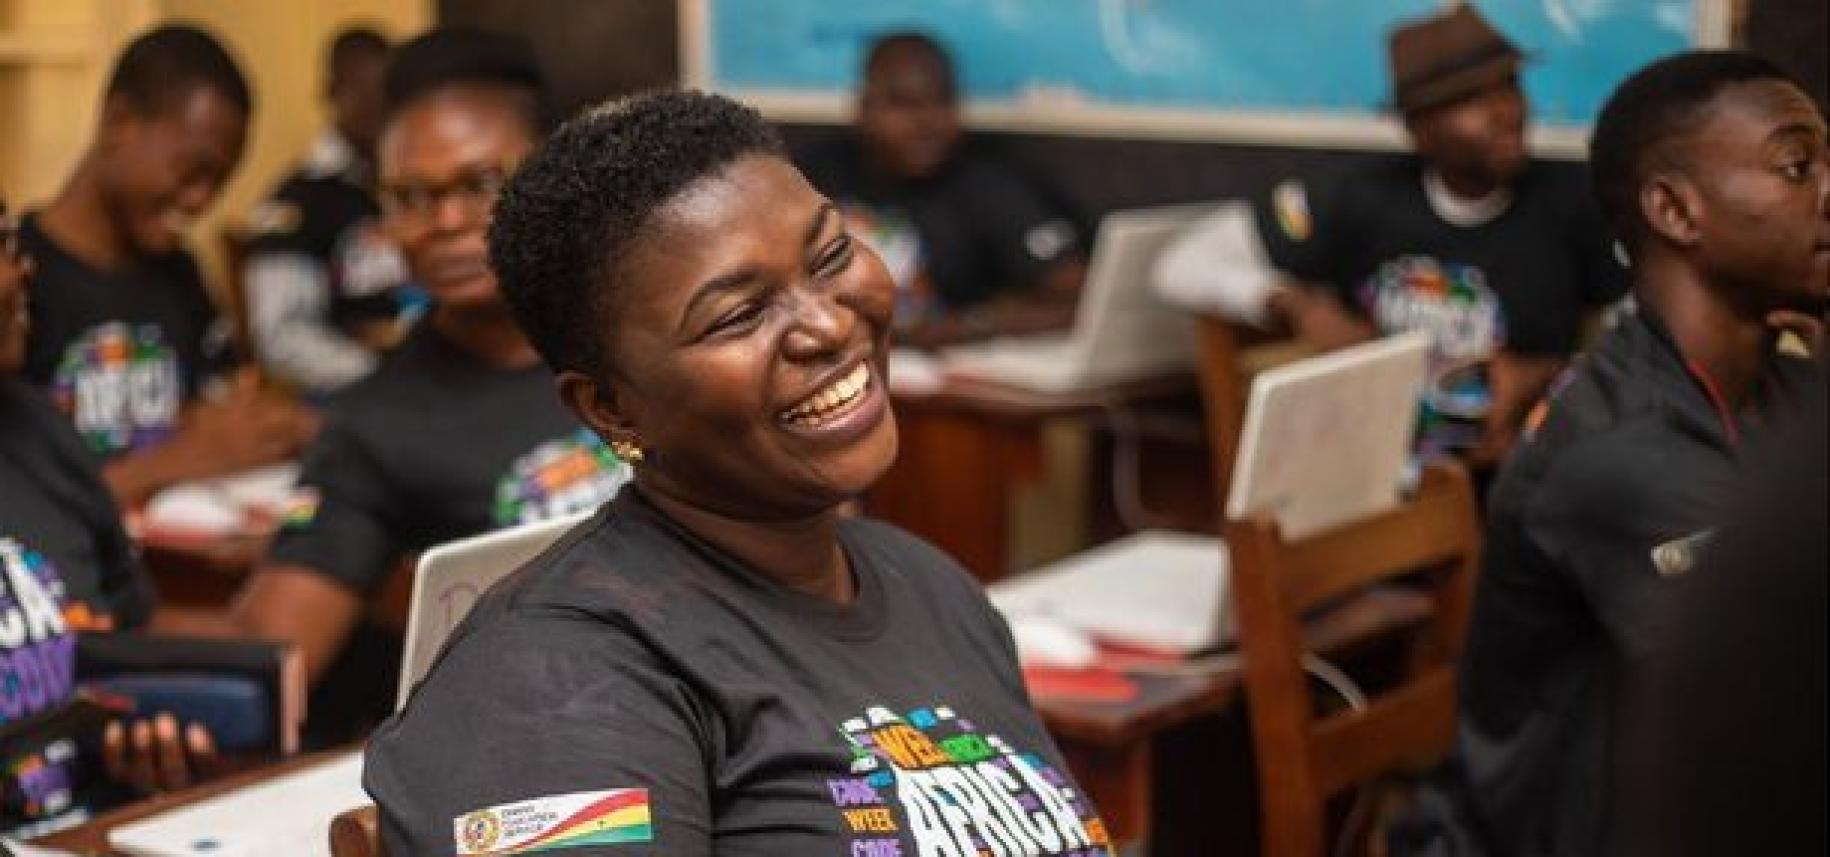 Una joven con el pelo muy corto que lleva una camiseta con el logotipo de la semana del código de África (Africa Code Week) es fotografiada en un aula riendo.